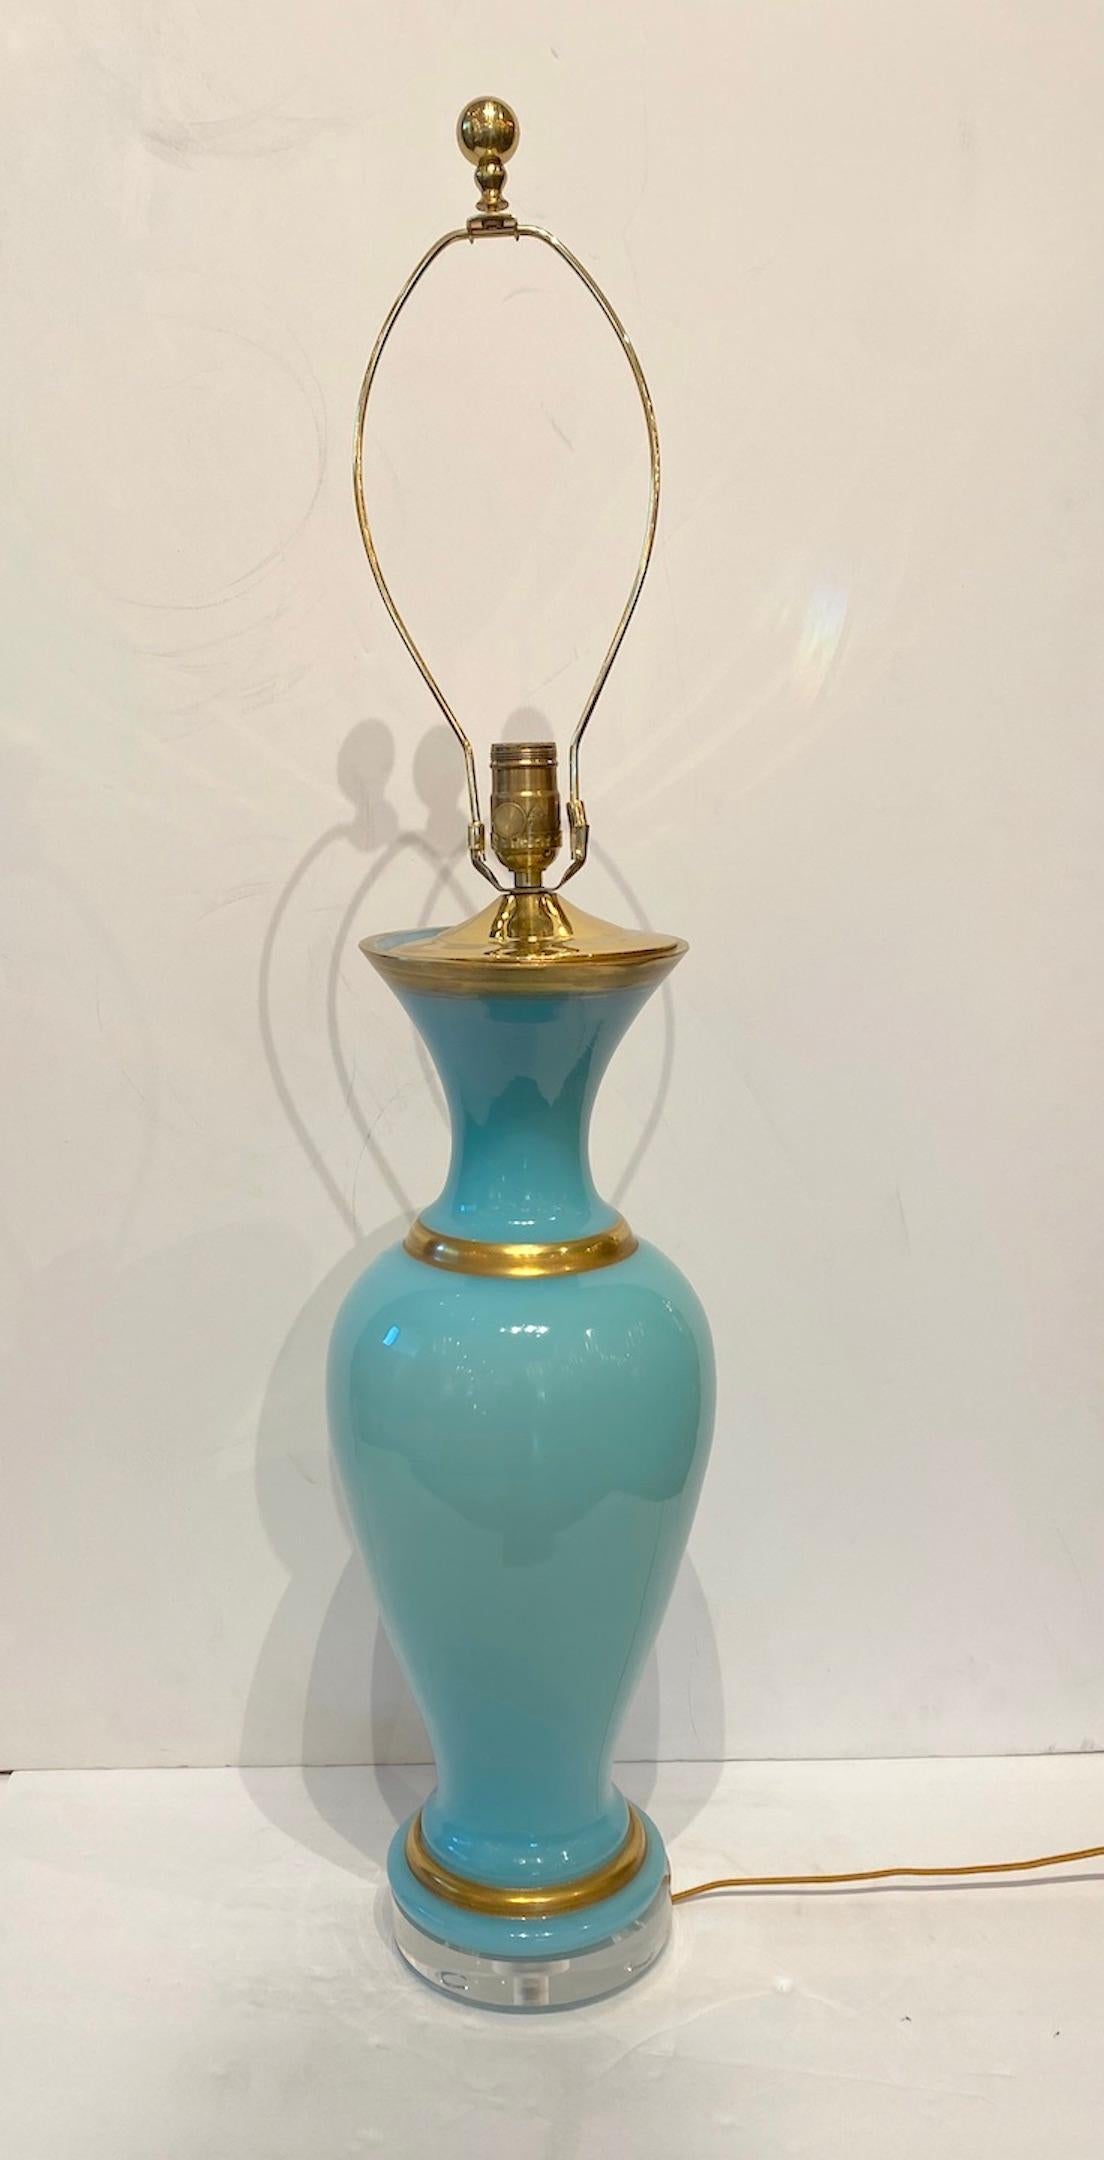 Magnifique vase français en opaline aqua pâle avec des bandes dorées comme une lampe. Base en lucite. Abat-jour en lin de couleur bronze avec détail de garniture. Câblé pour les États-Unis.